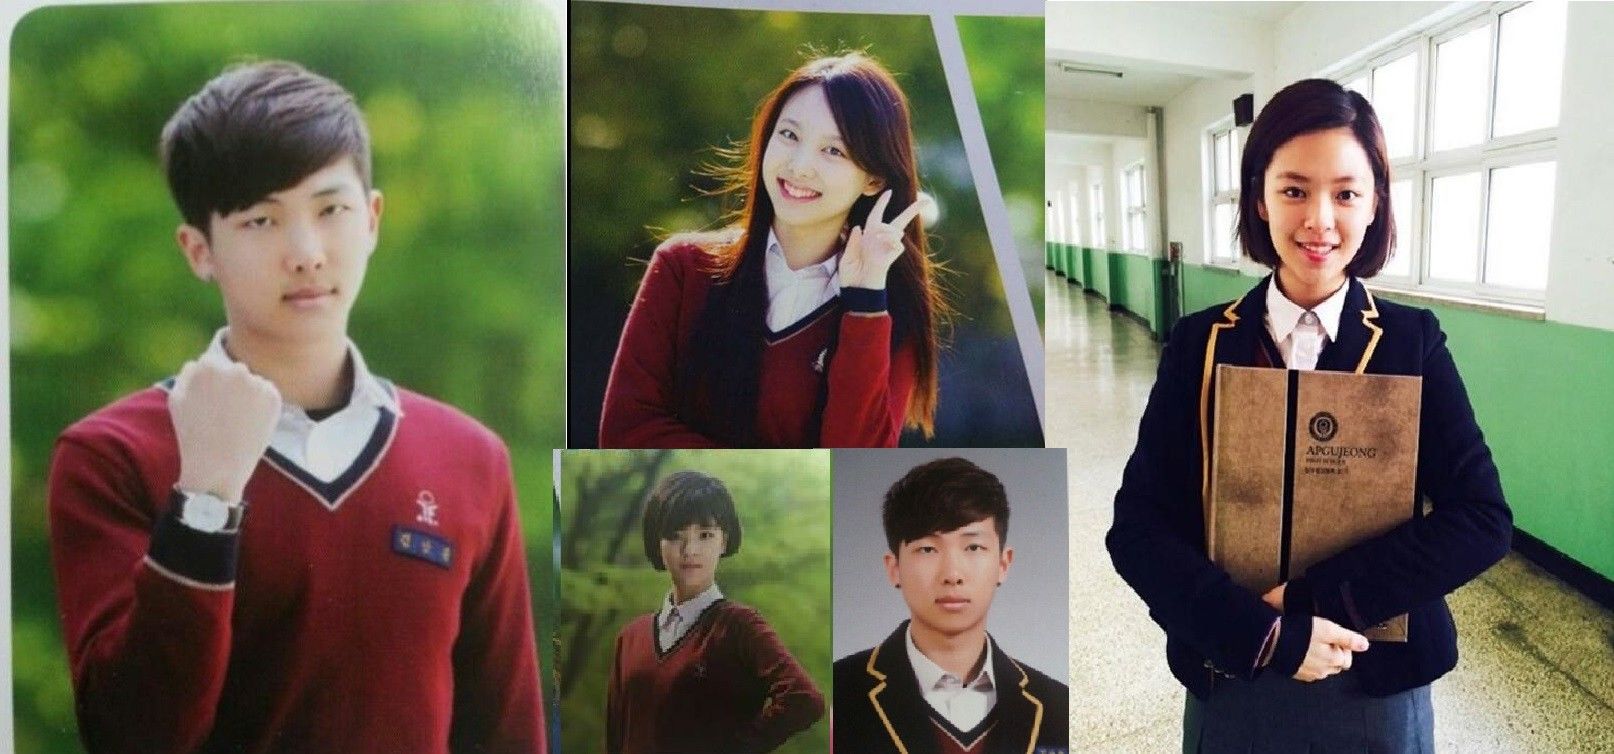 Ini Dia 5 Model Seragam  Sekolah  Paling Populer di Korea  